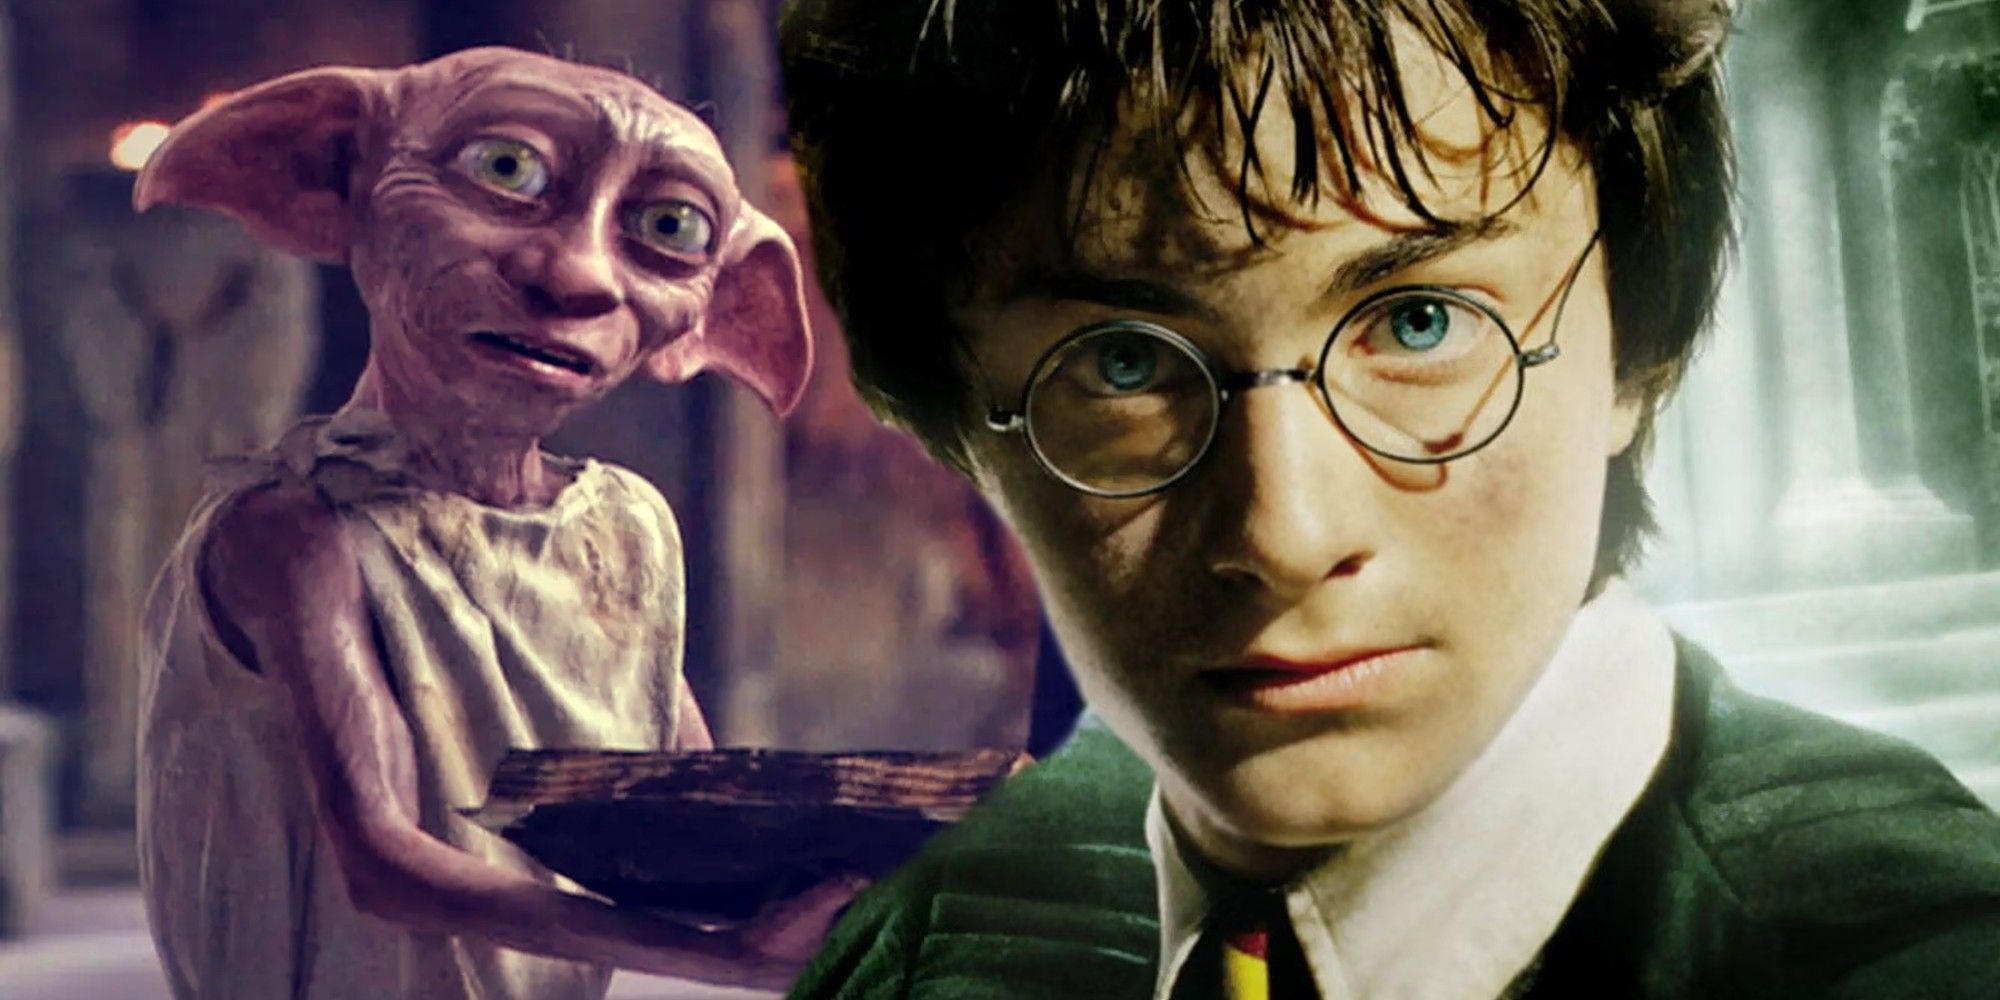 Las películas de Harry Potter arreglaron la escena más tonta de la Cámara Secreta (y el remake de Max también debería hacerlo)